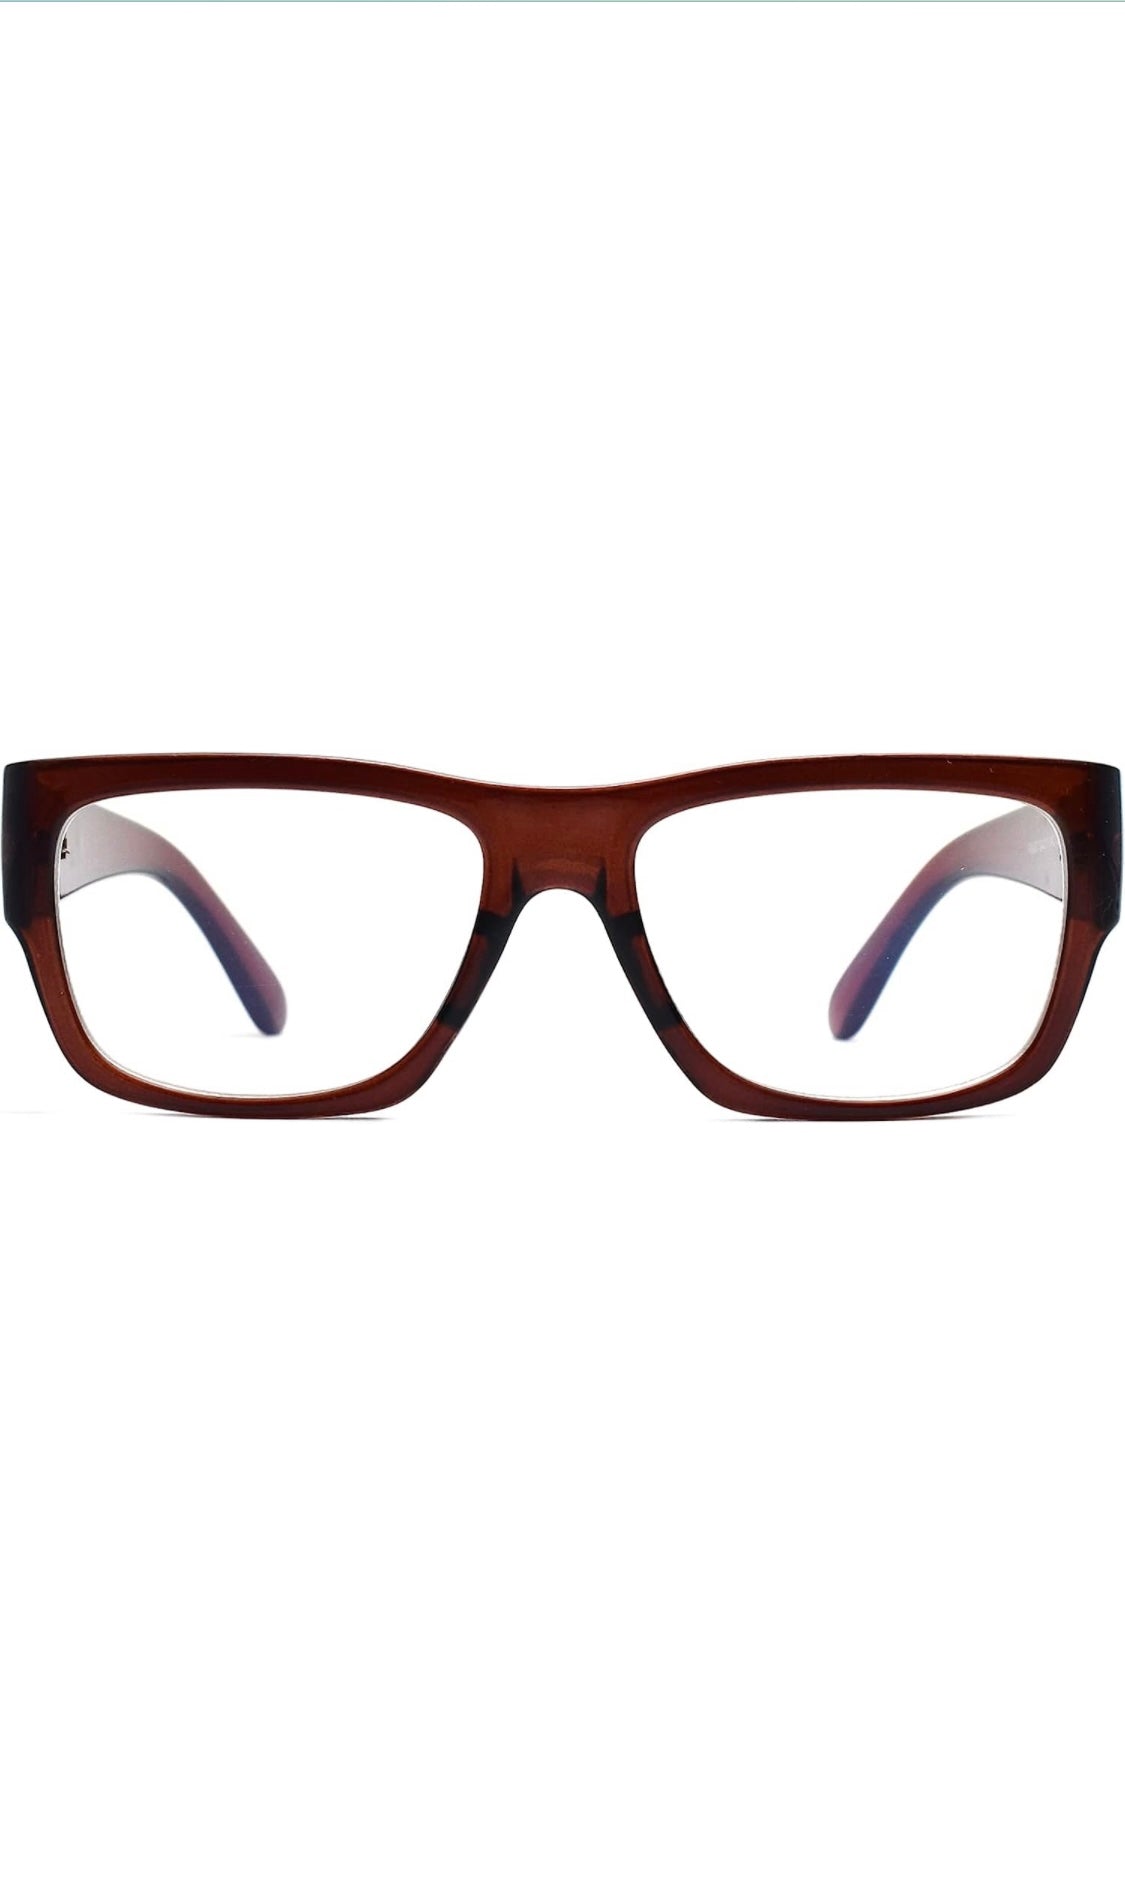 Jodykoes Thick Frame Unisex Anti Glare Eyeglasses Eyewear Spectacle (Brown) - Jodykoes ®